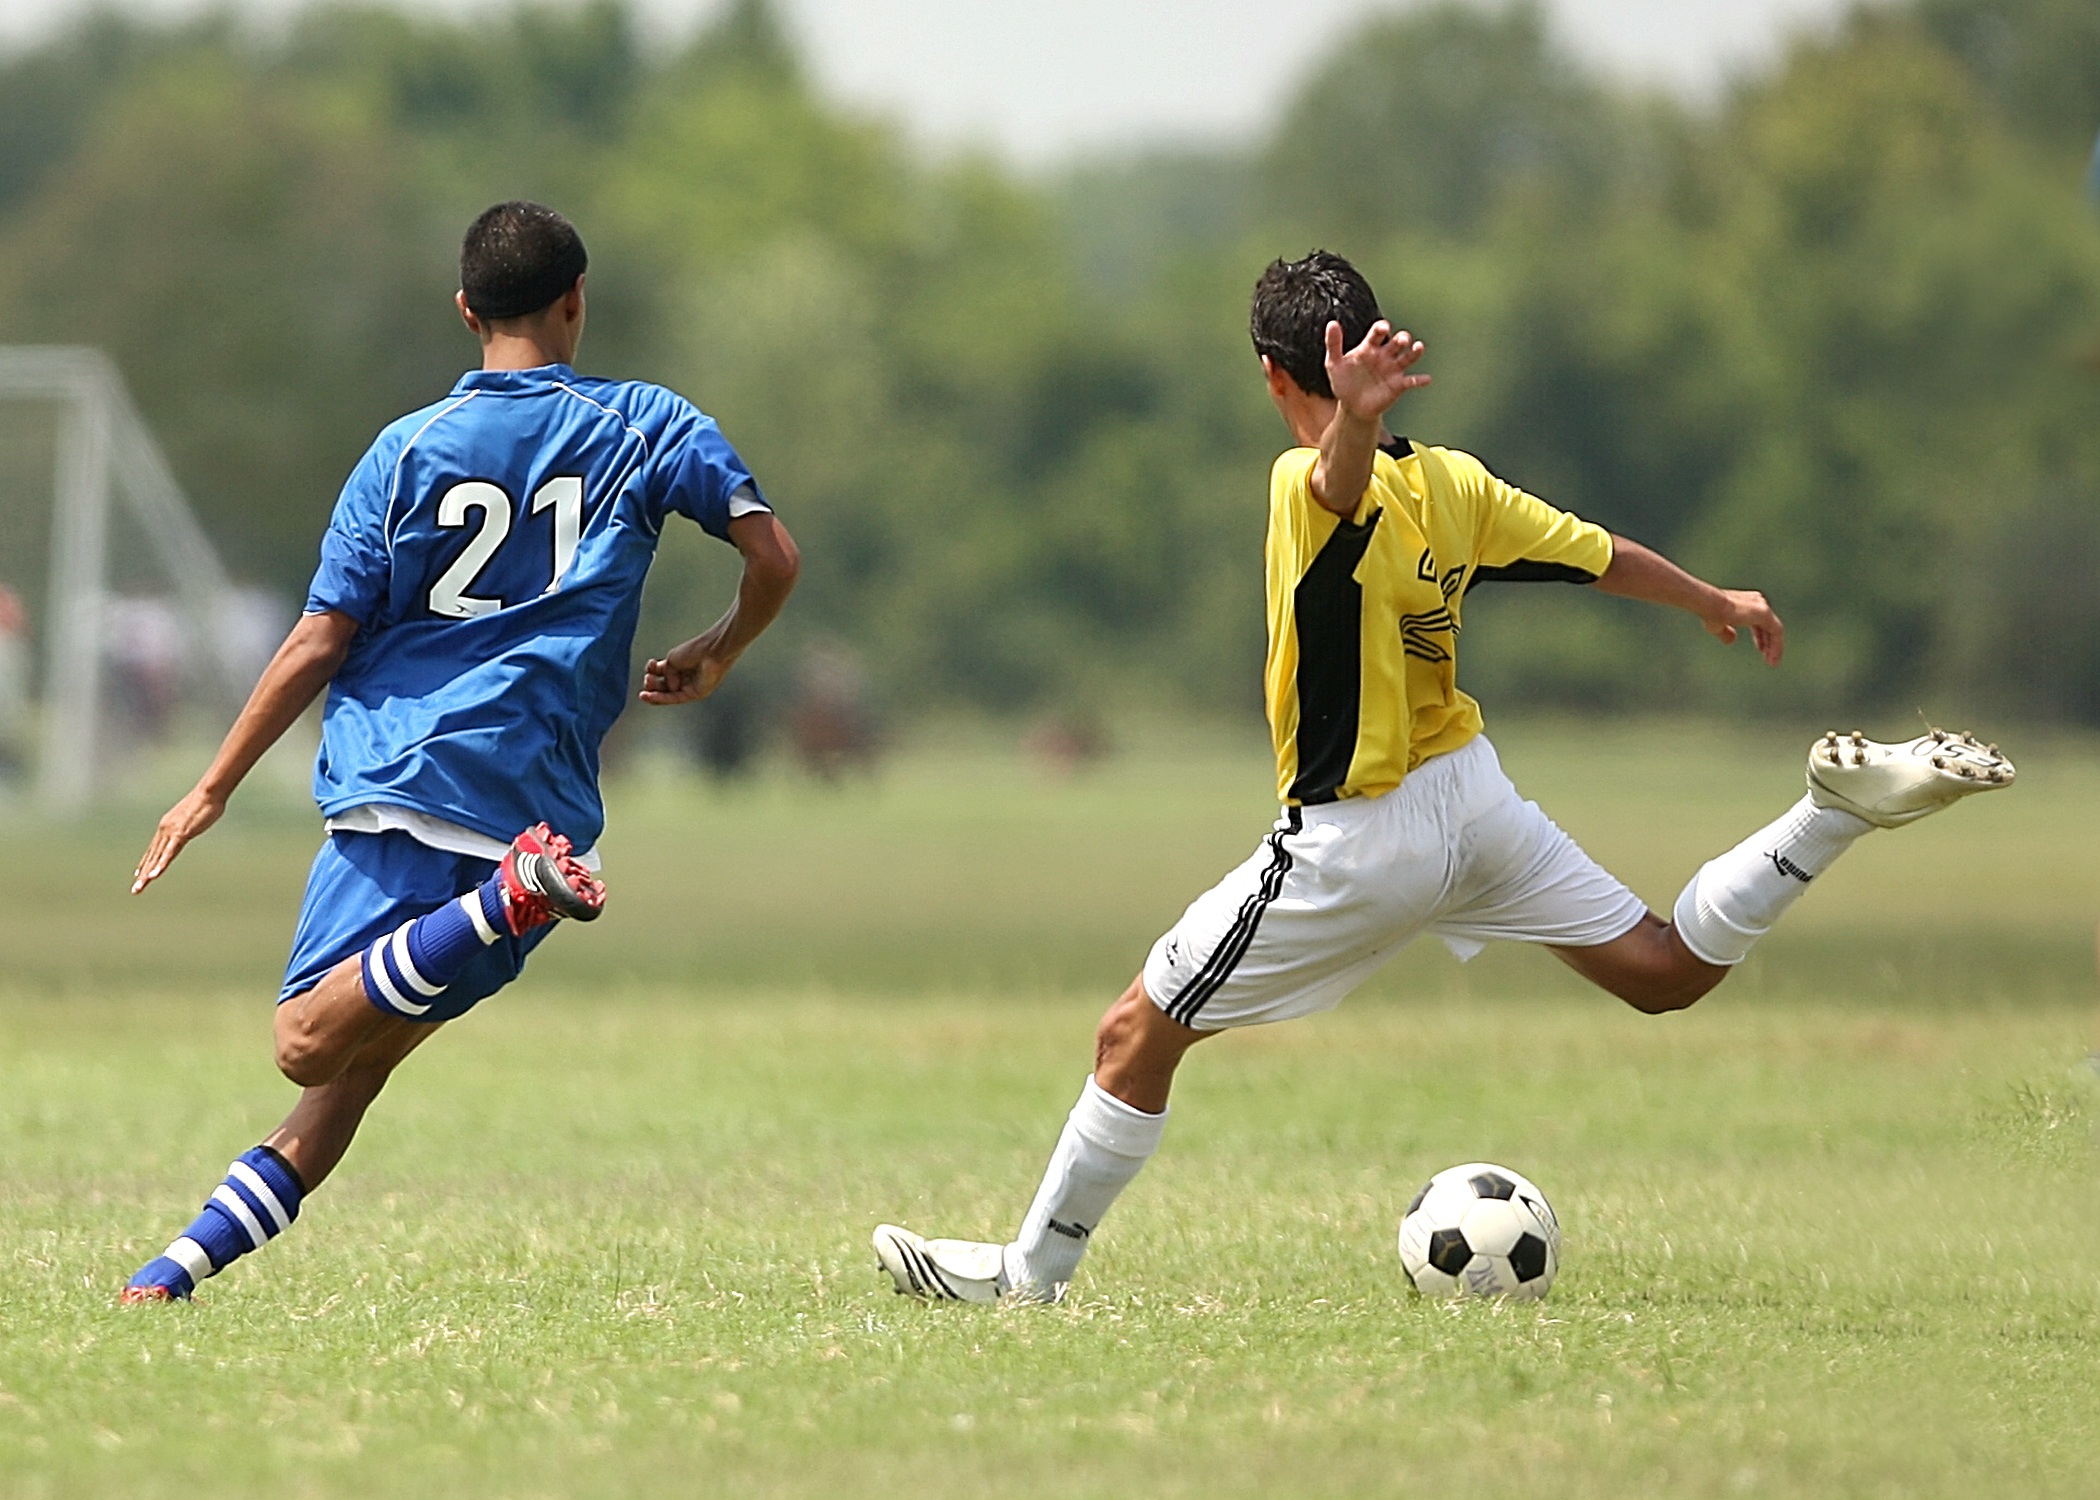 Jogar futebol atrapalha no ganho de massa muscular? 